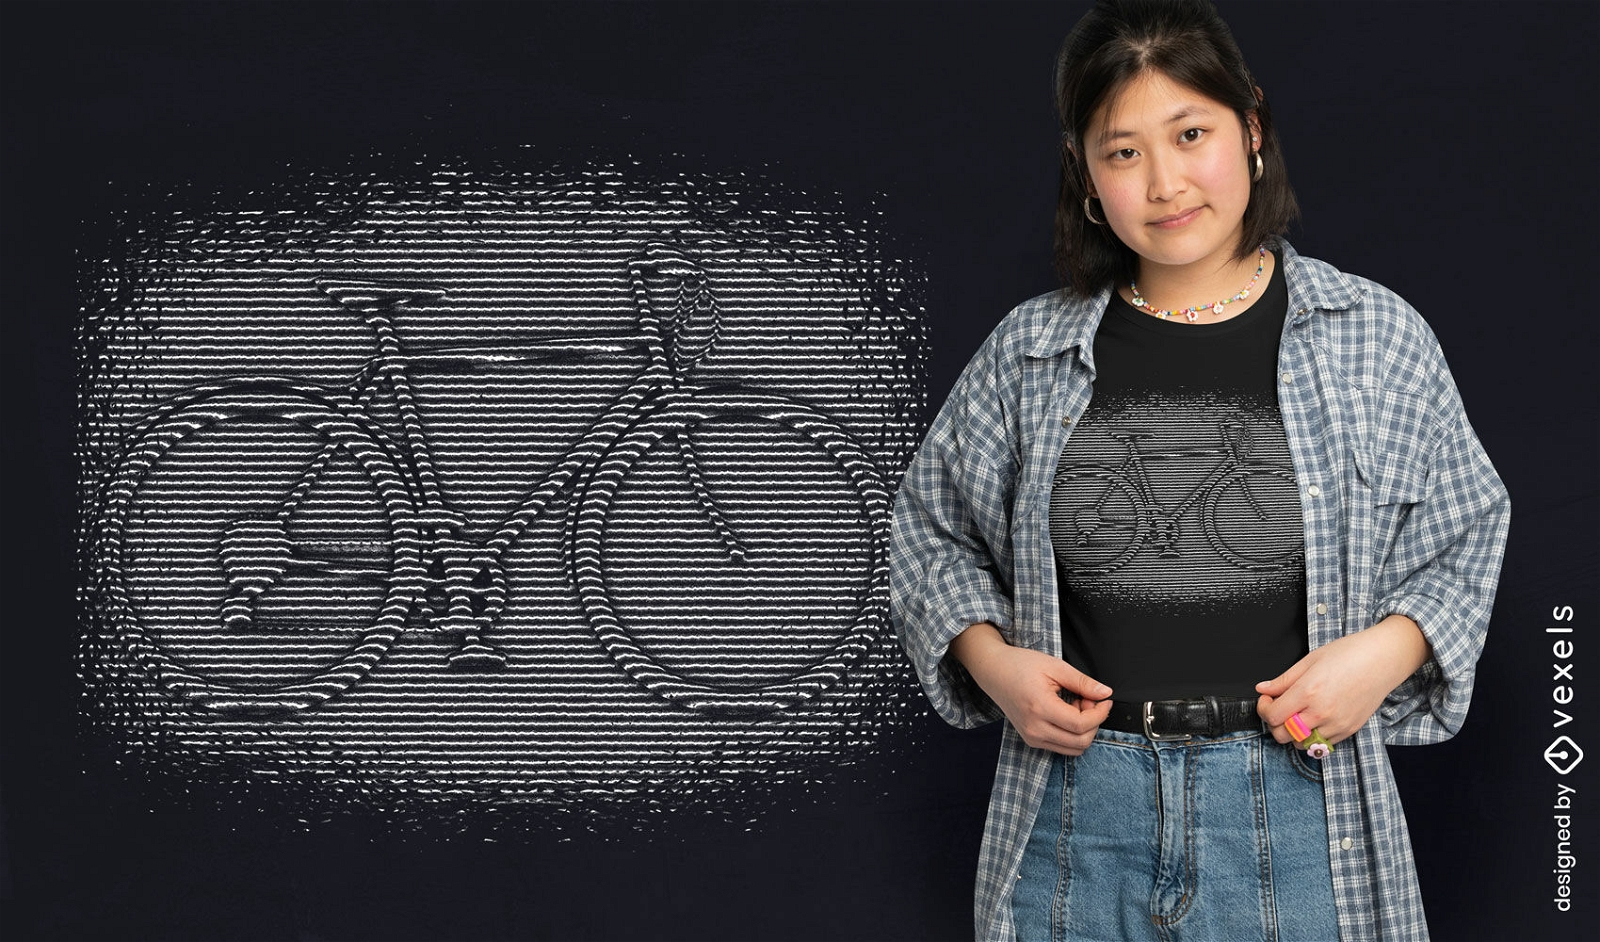 Diseño de camiseta de ilusión óptica de bicicleta.